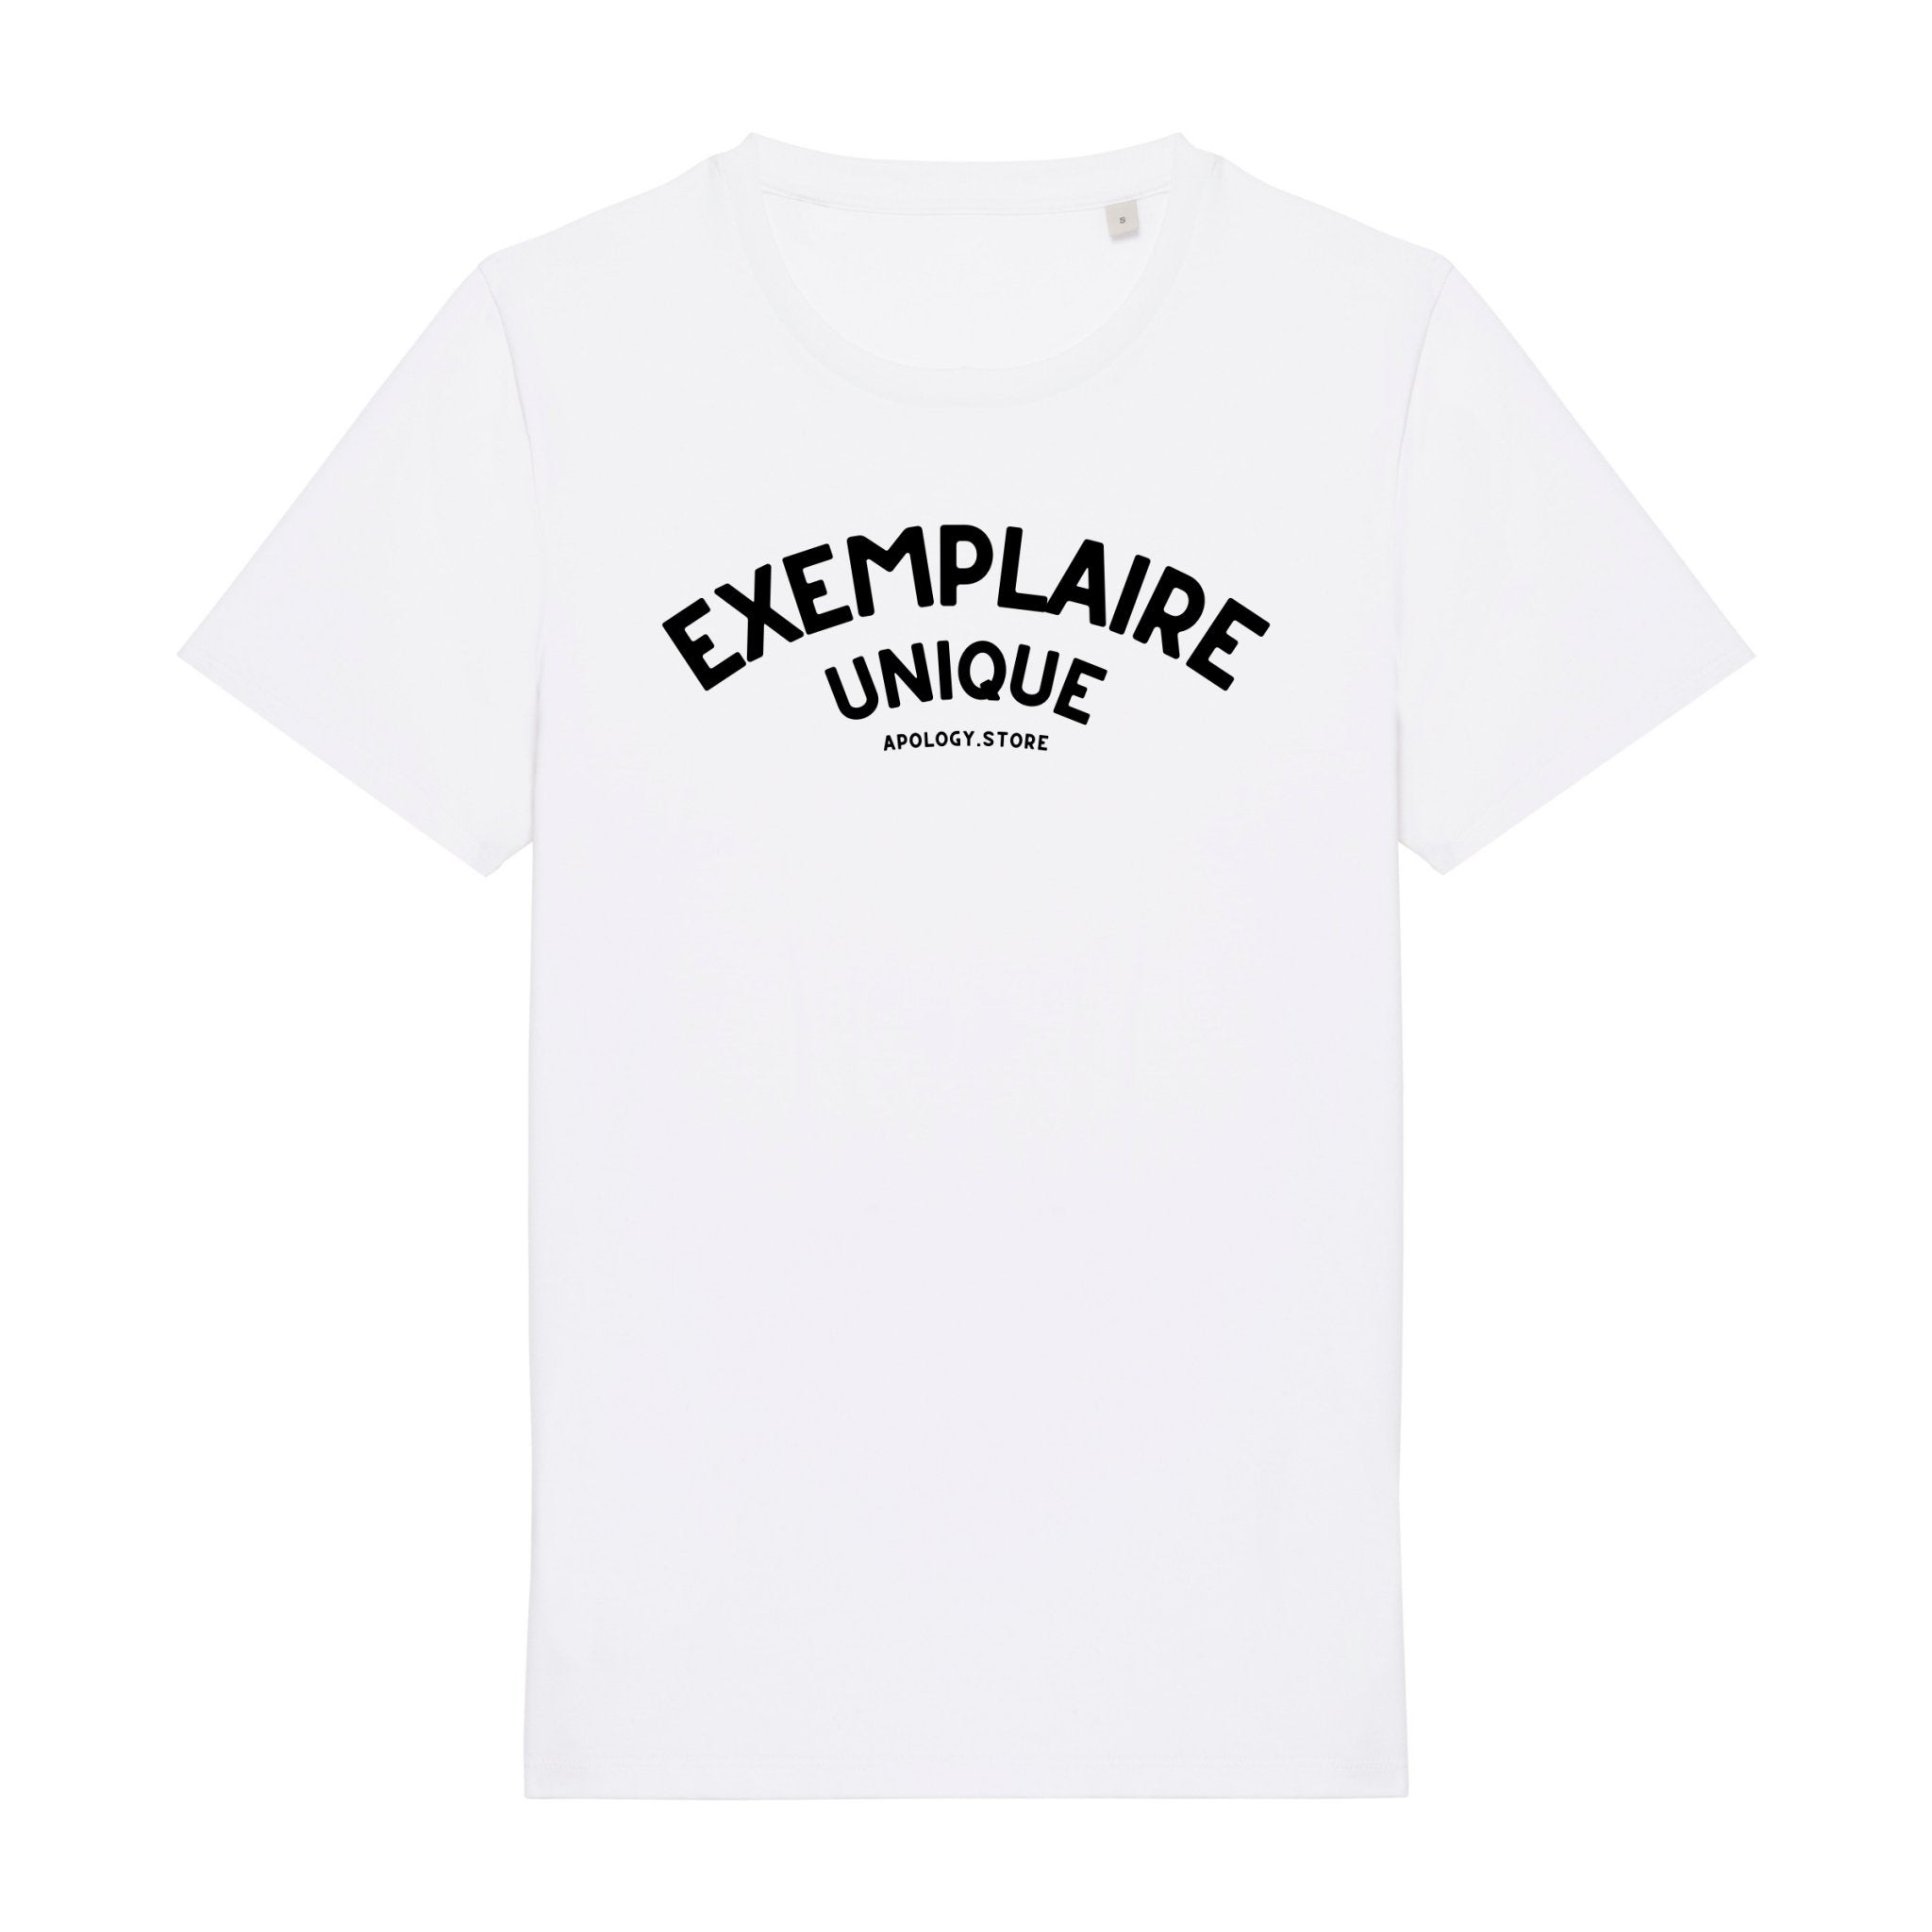 T-shirt Exemplaire Unique - Fabriqué au Portugal XS Blanc - Imprimé en France